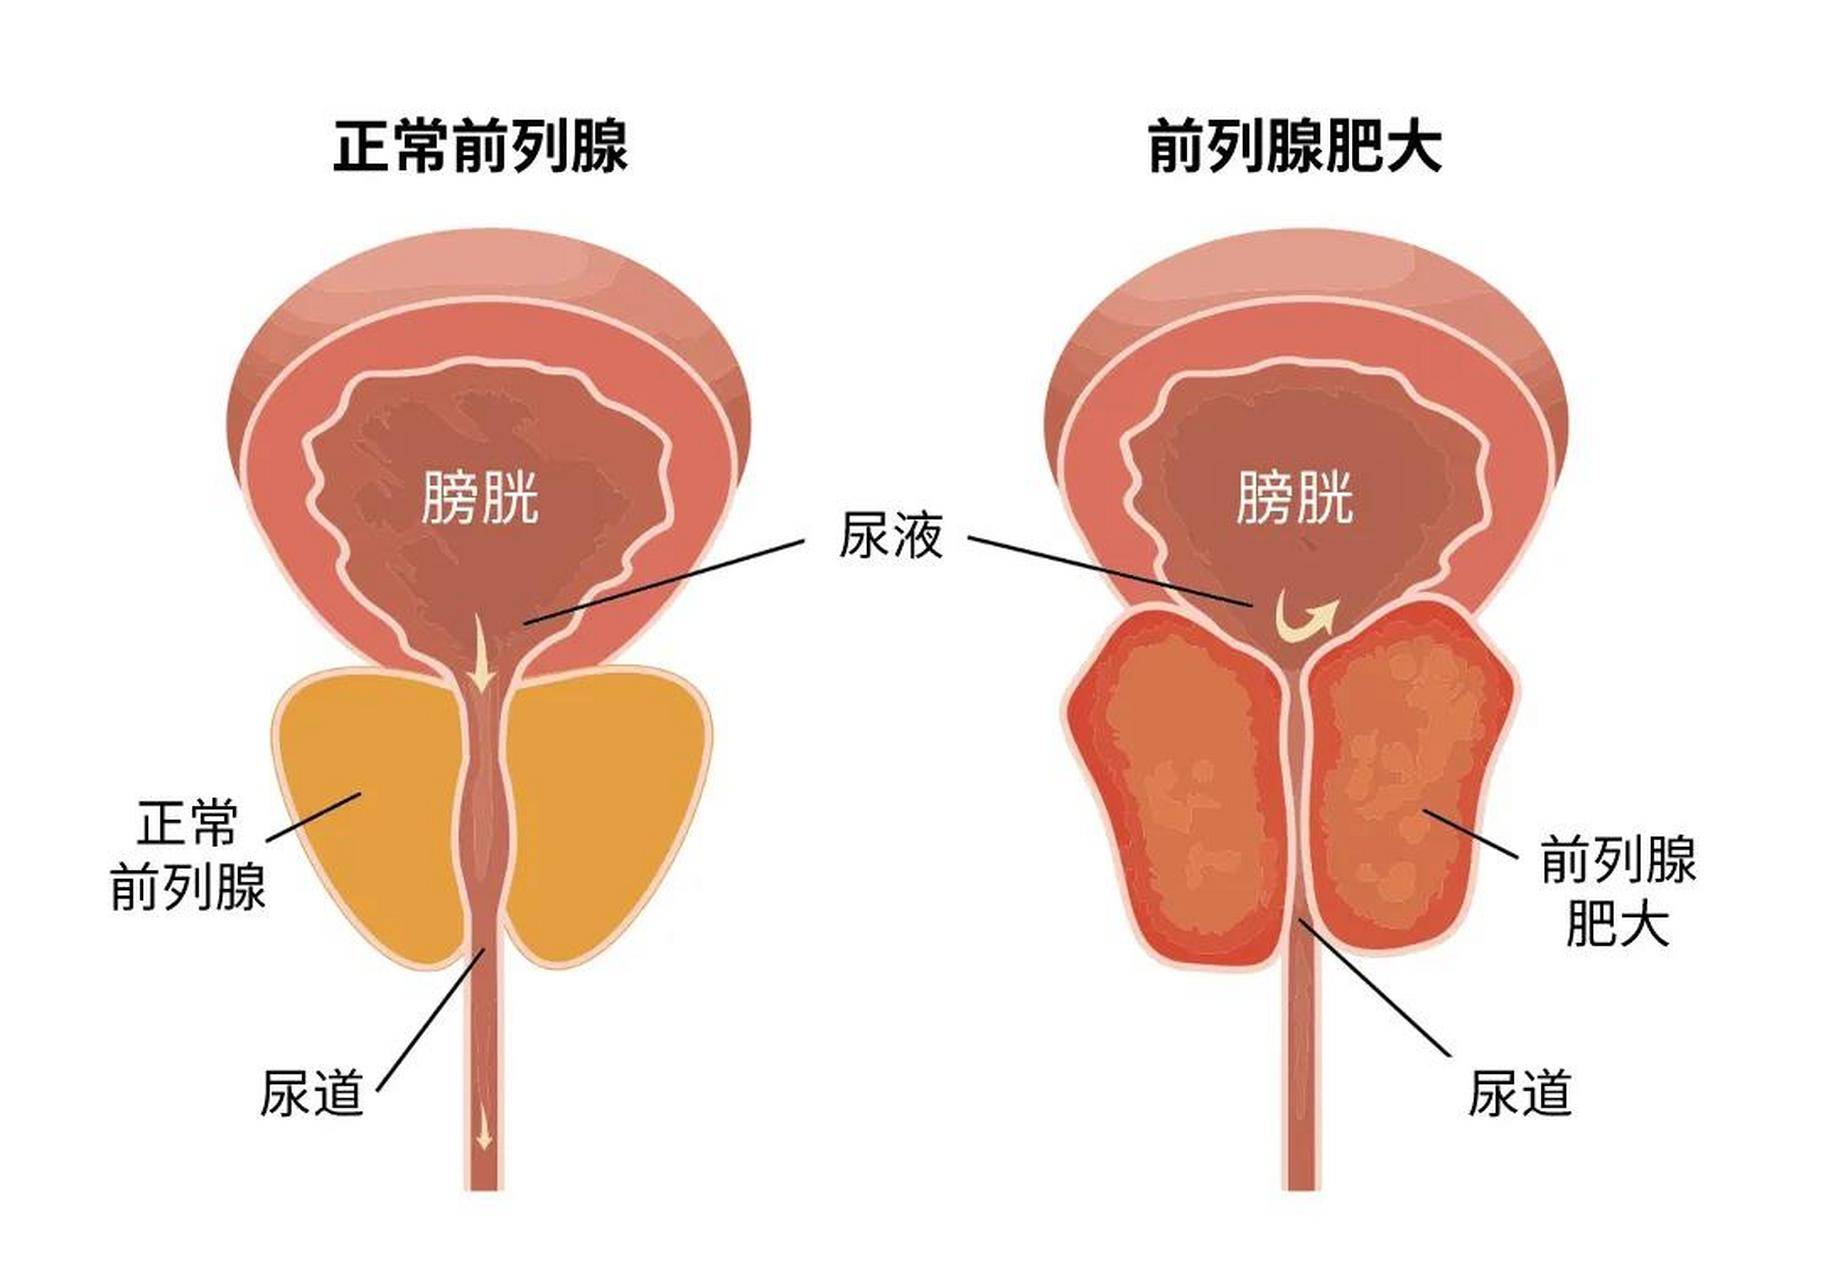 成都经方堂医院王剑峰主任:得了前列腺炎,还能进行性生活吗?